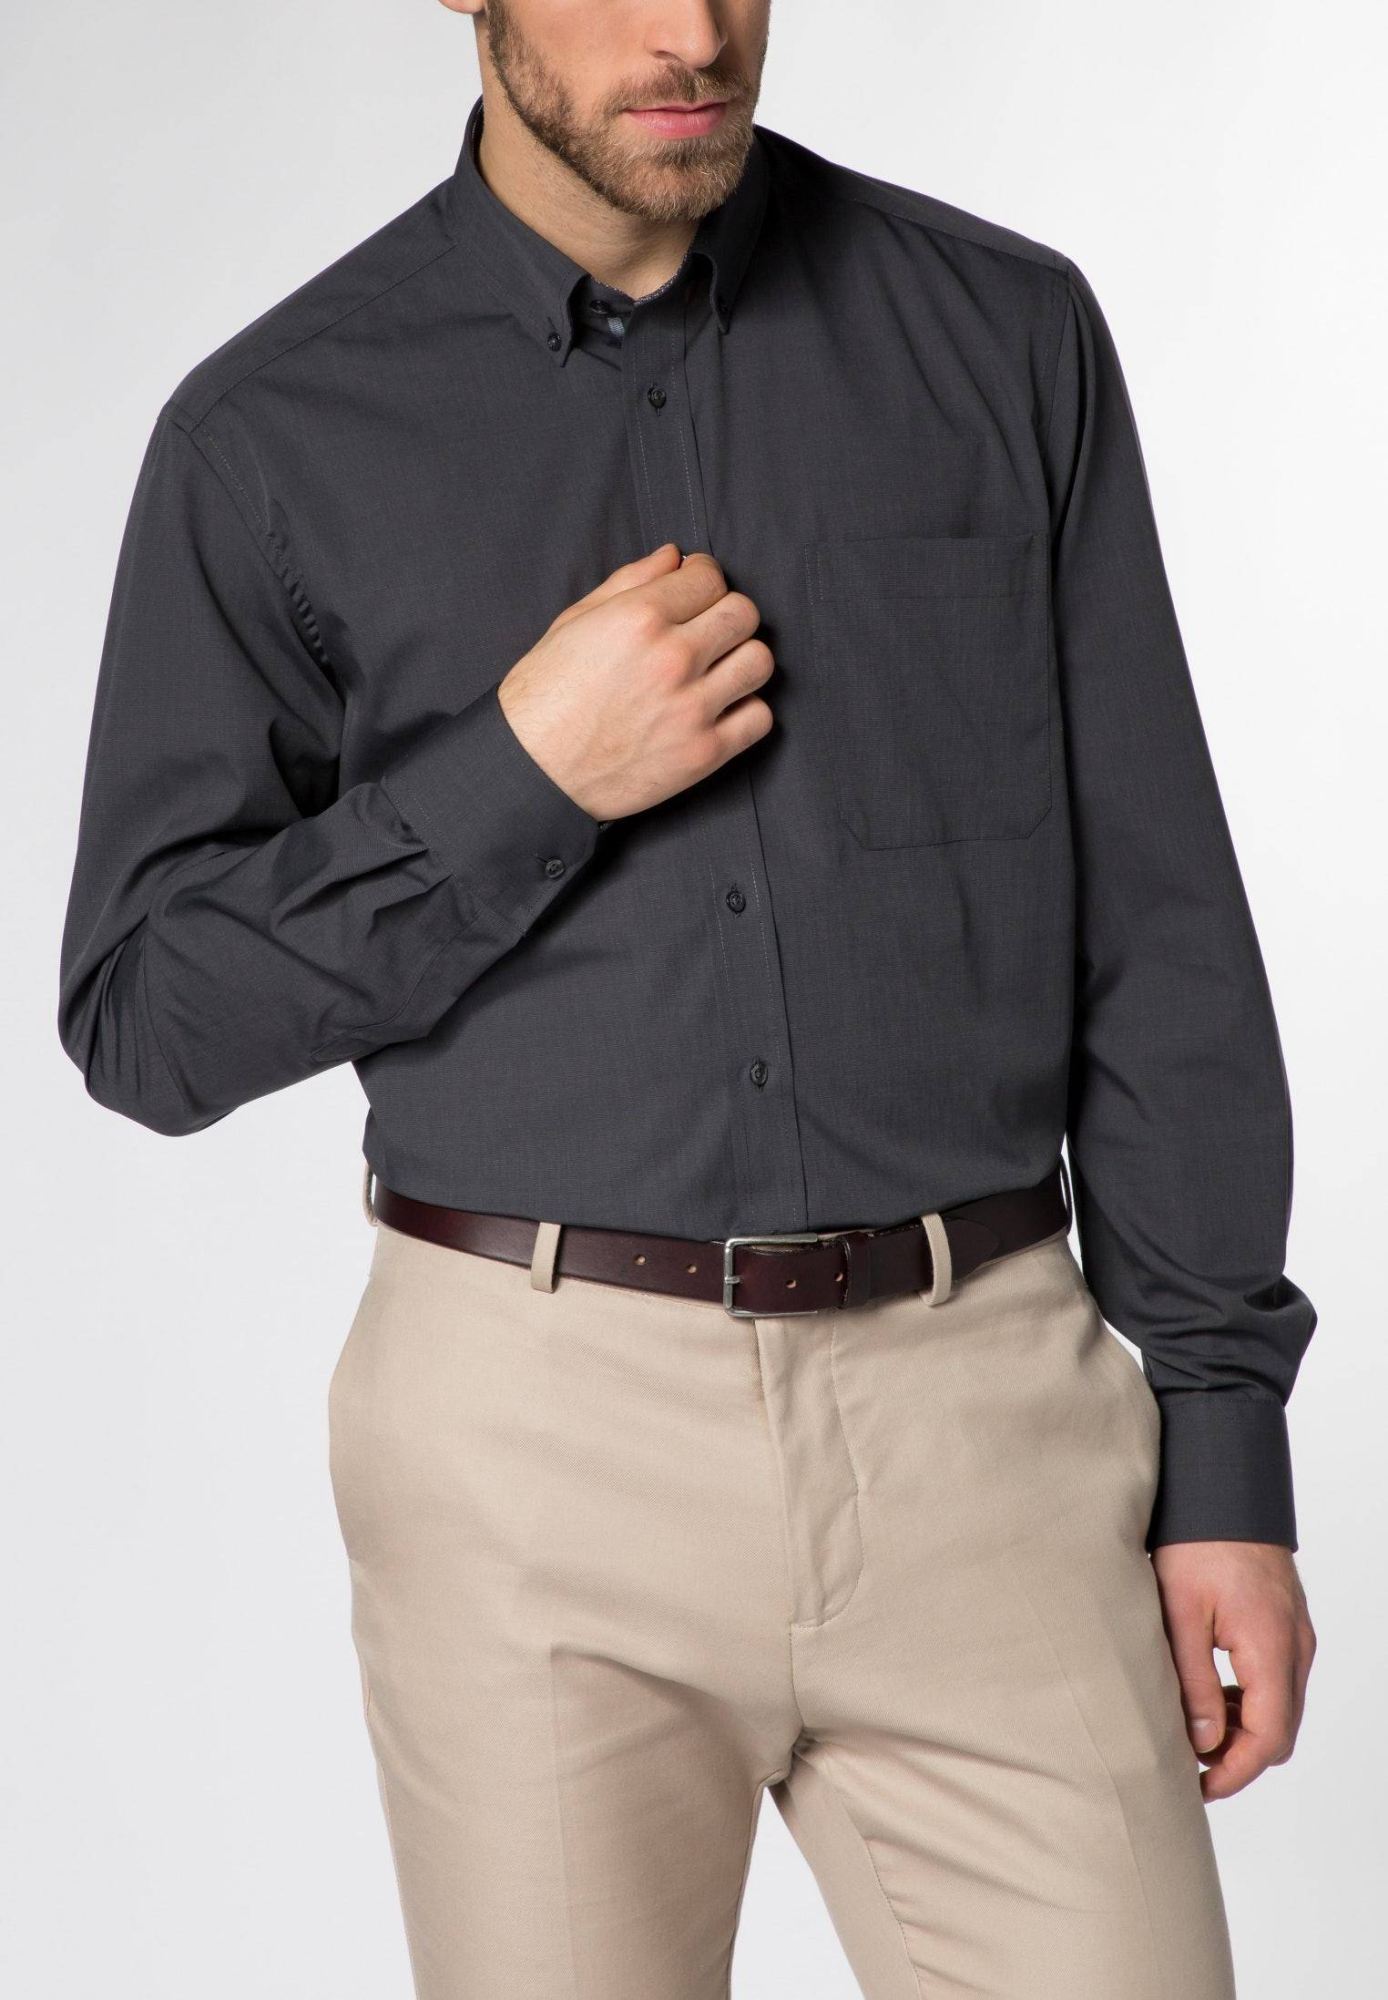 Мужская рубашка ETERNA, серая, цвет серый, размер 50 - фото 1